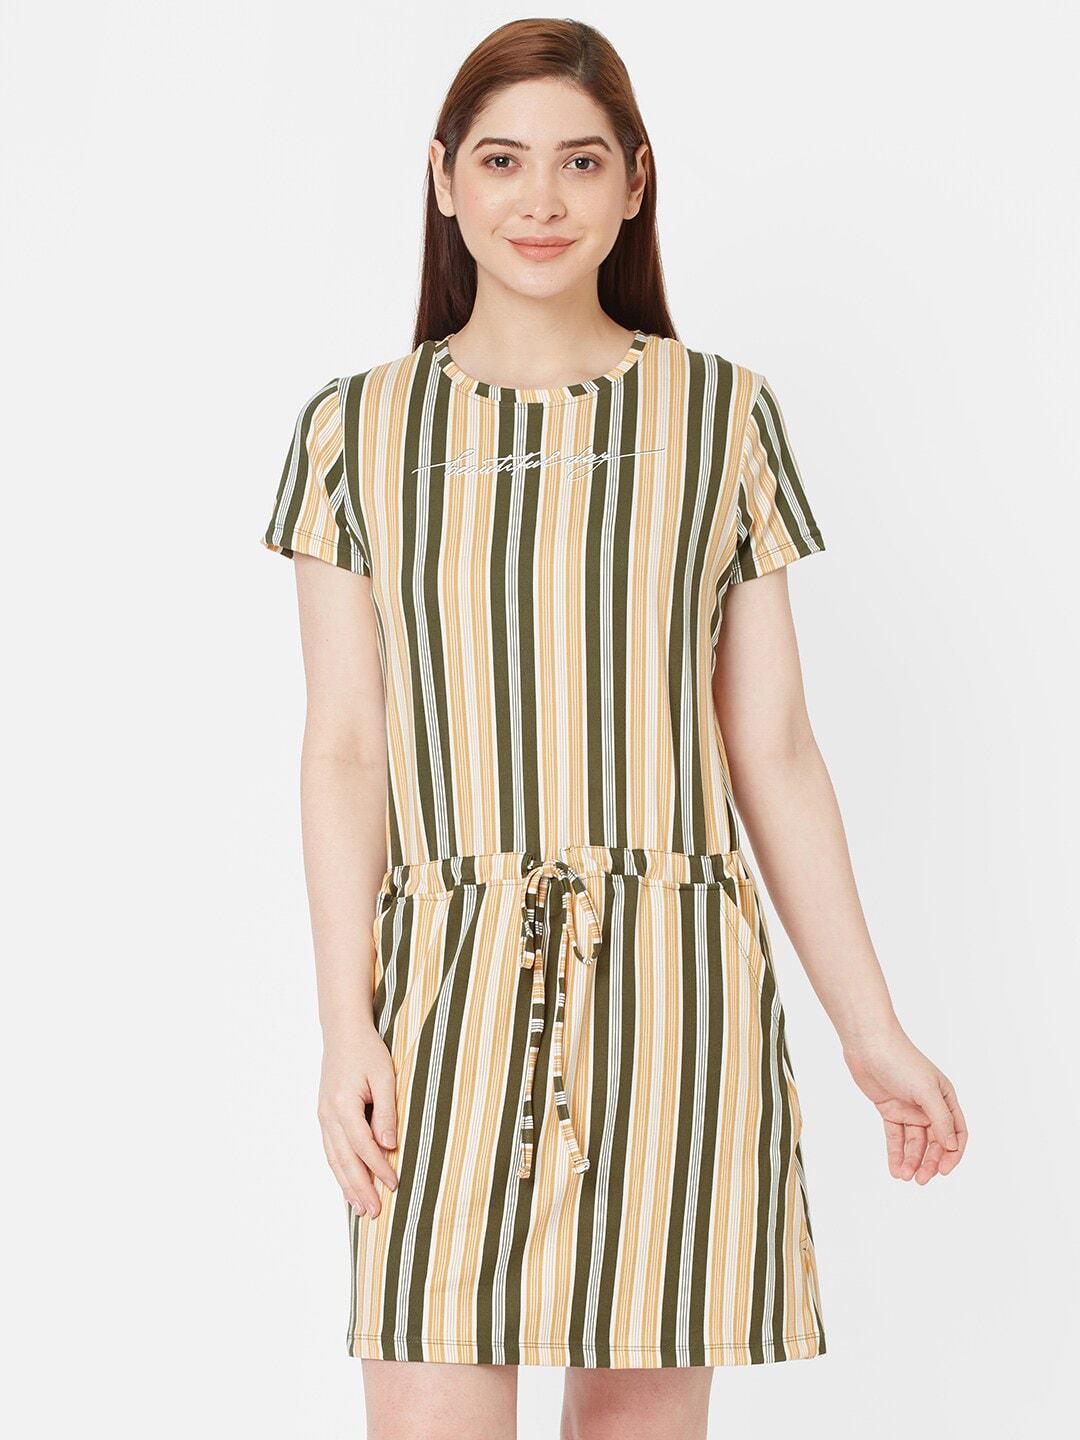 sweet-dreams-women-green-&-mustard-striped-nightdress